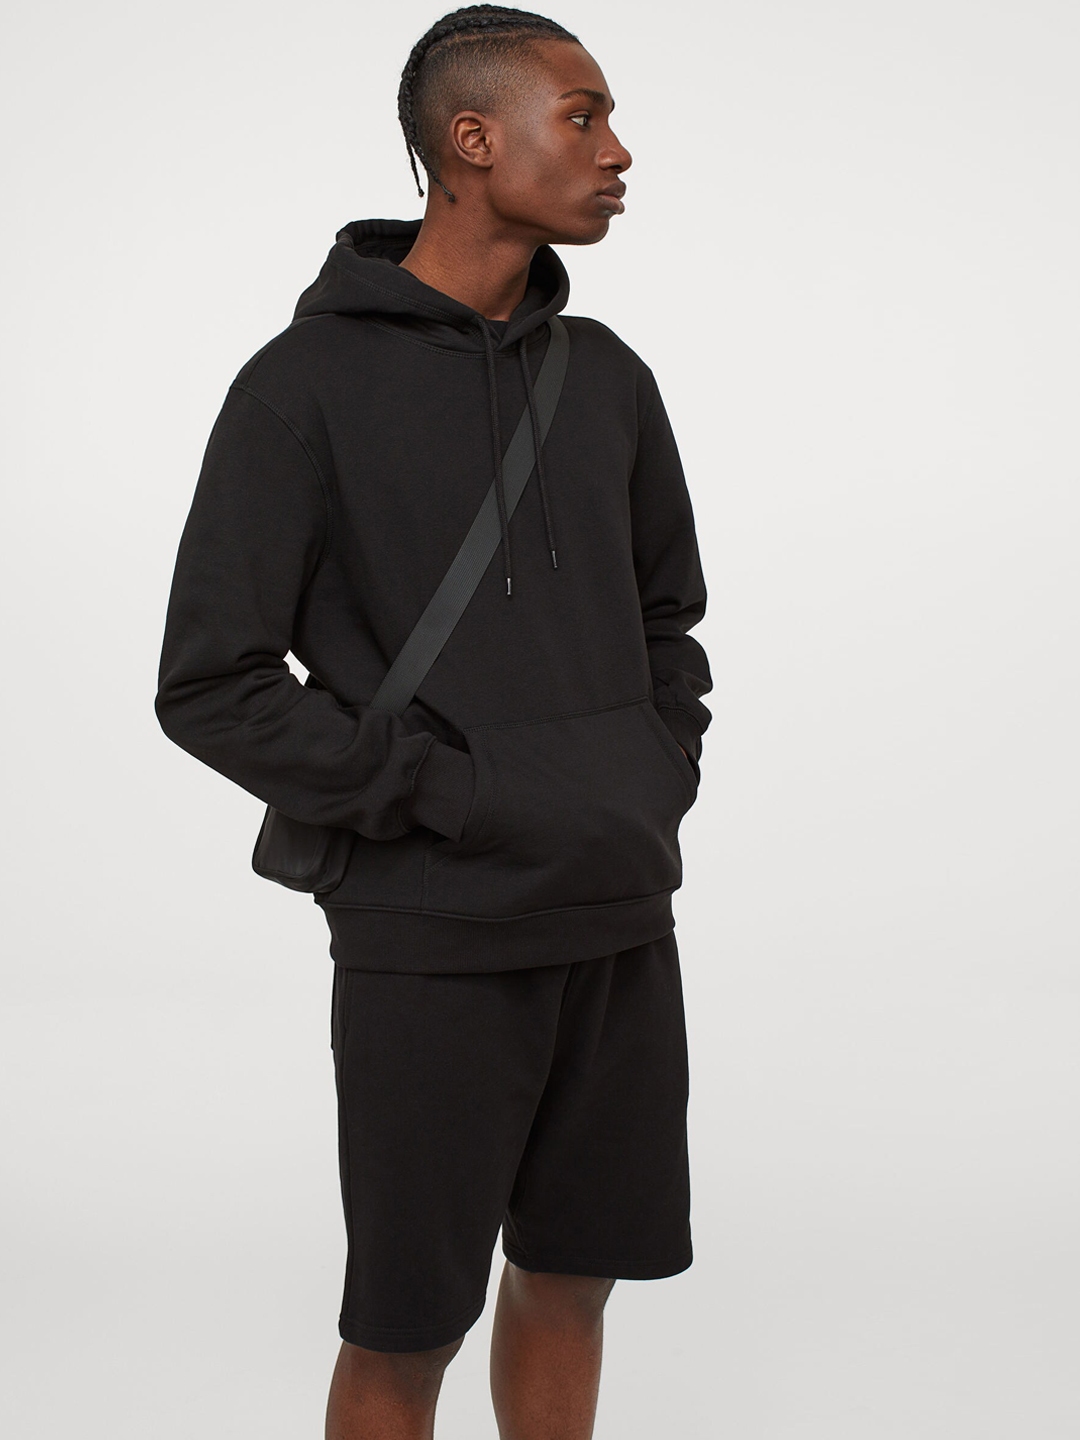 Buy H&M Men Black Relaxed Fit Hoodie - Sweatshirts for Men